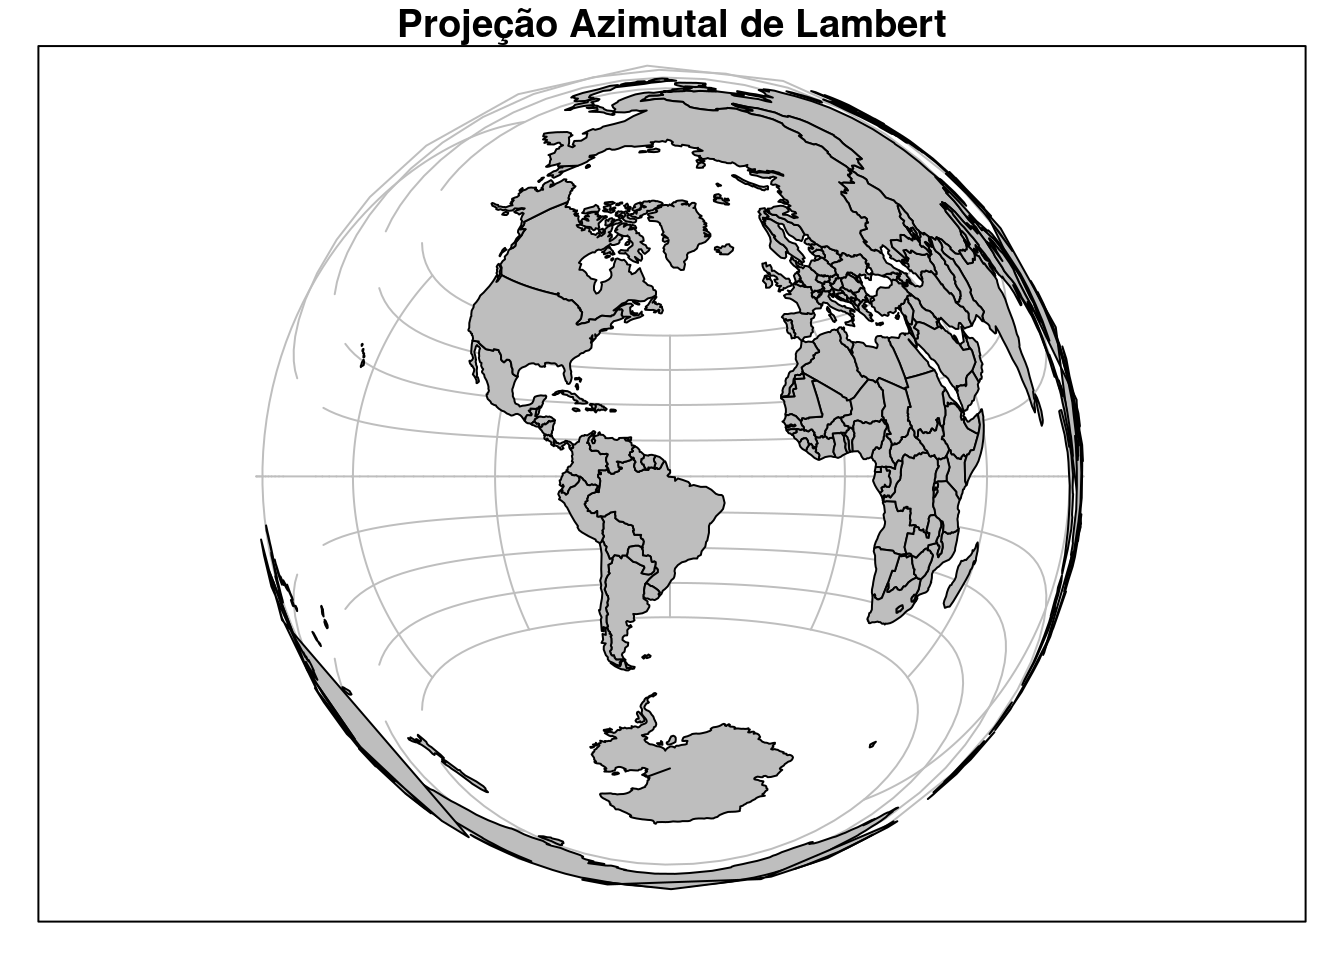 Limite dos países do mundo com CRS Projeção Azimutal de Lambert centrado no Brasil.